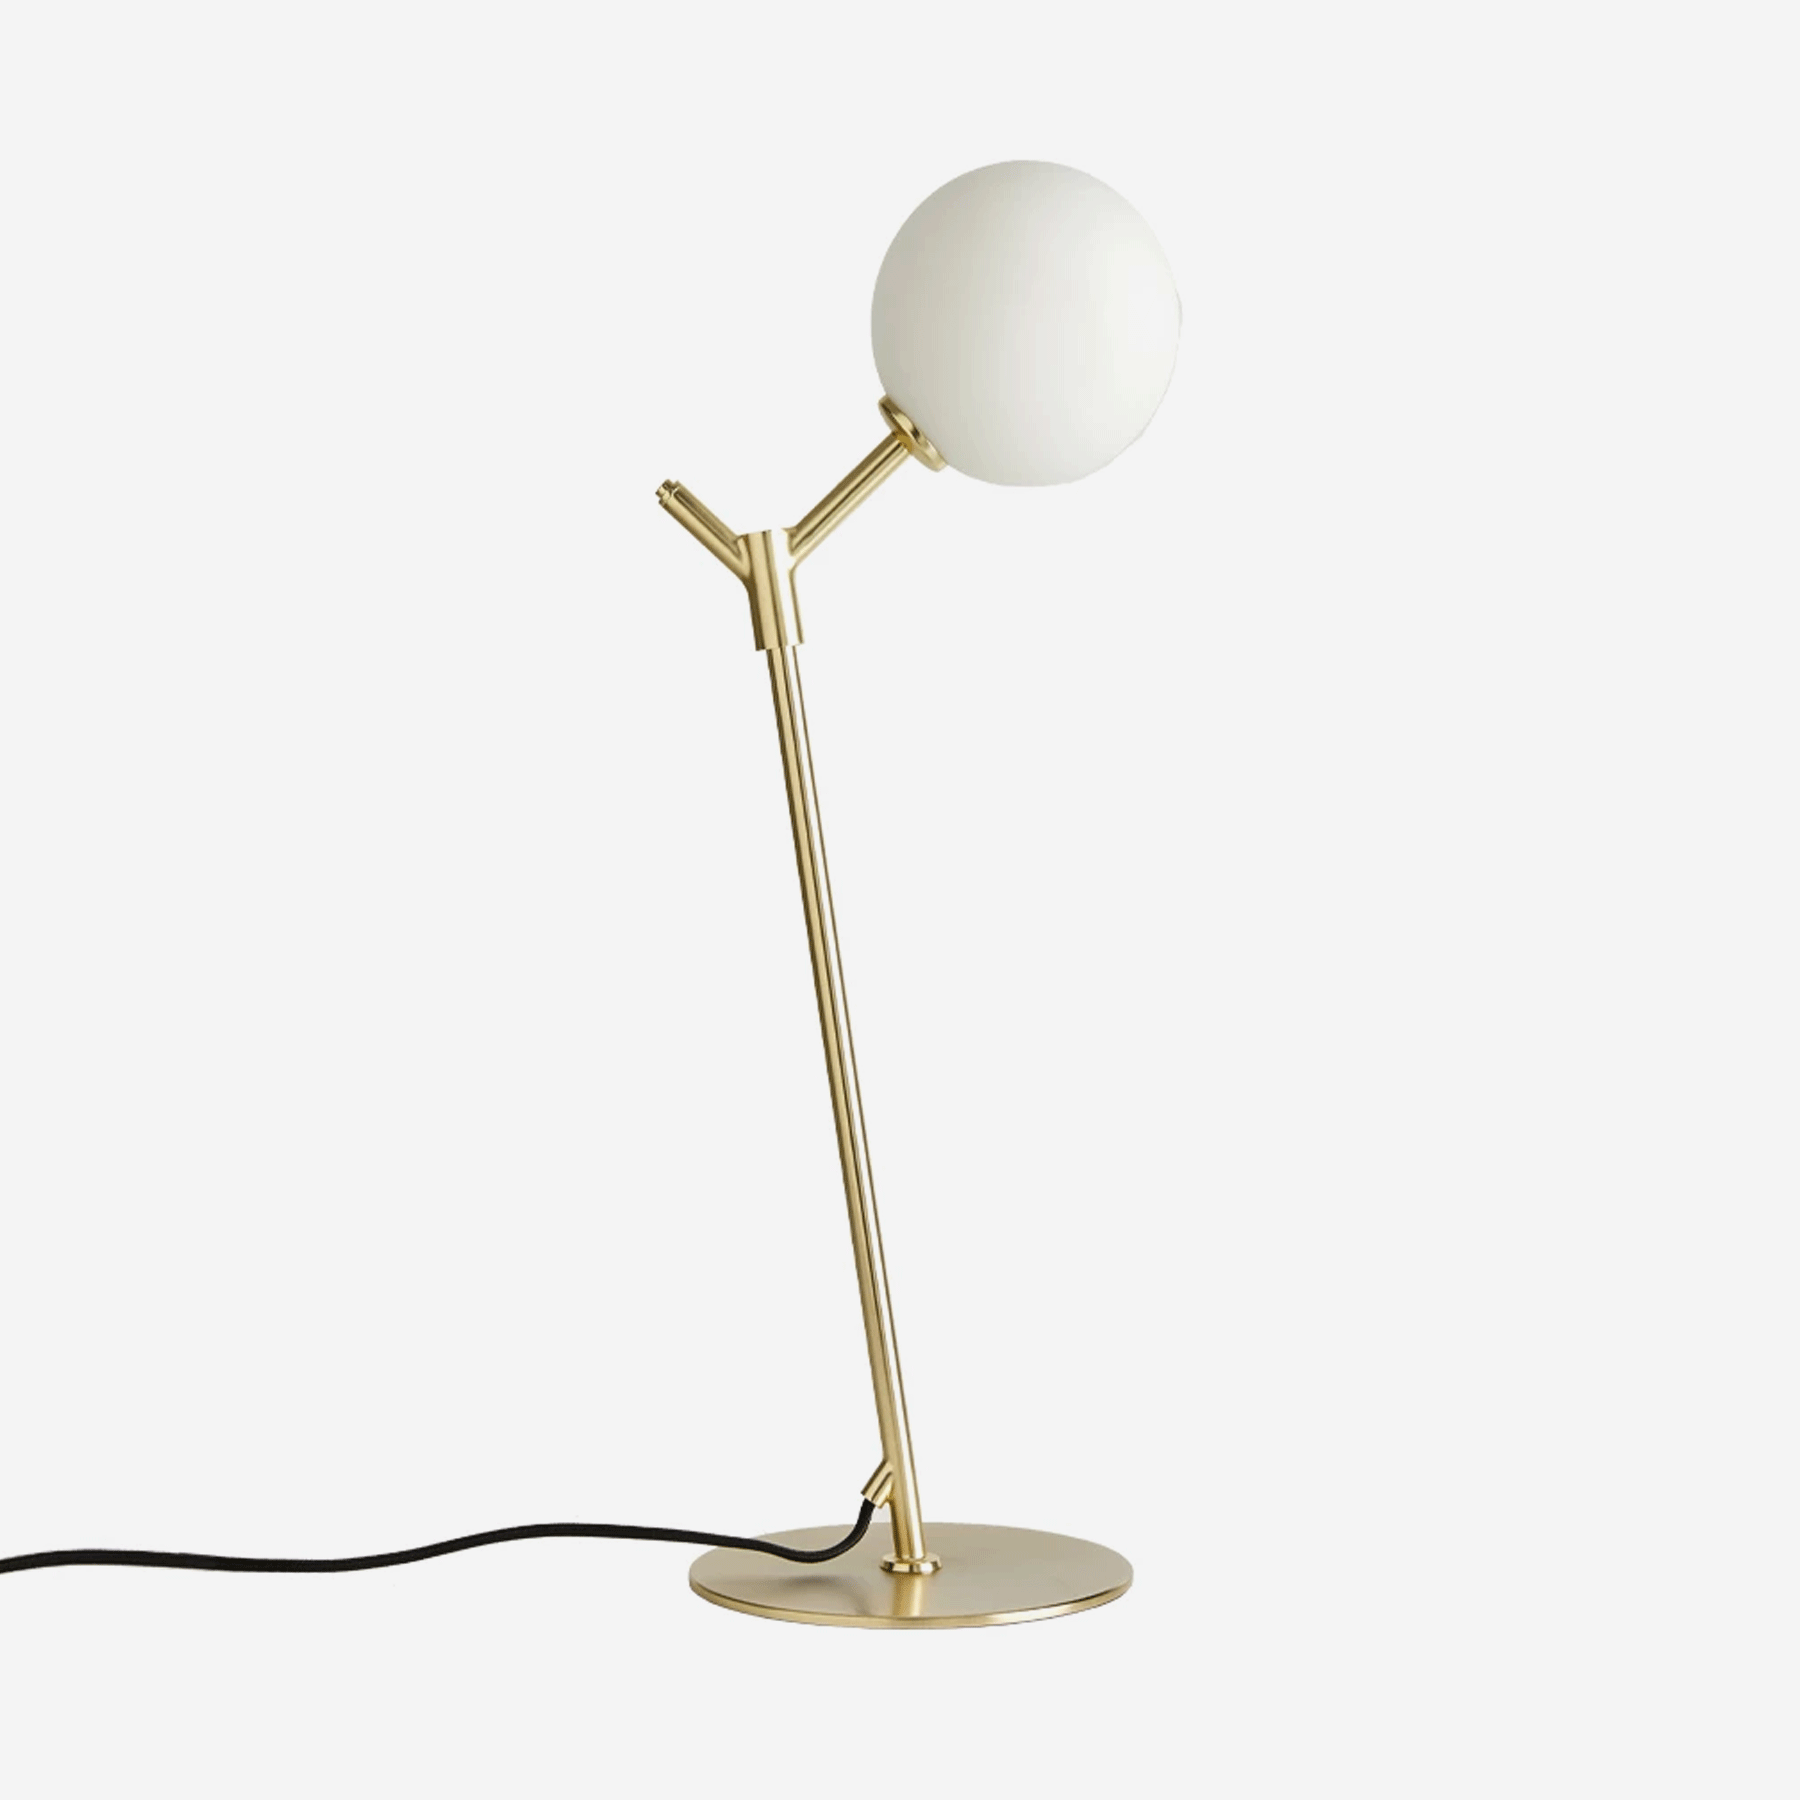 Atom Table Lamp